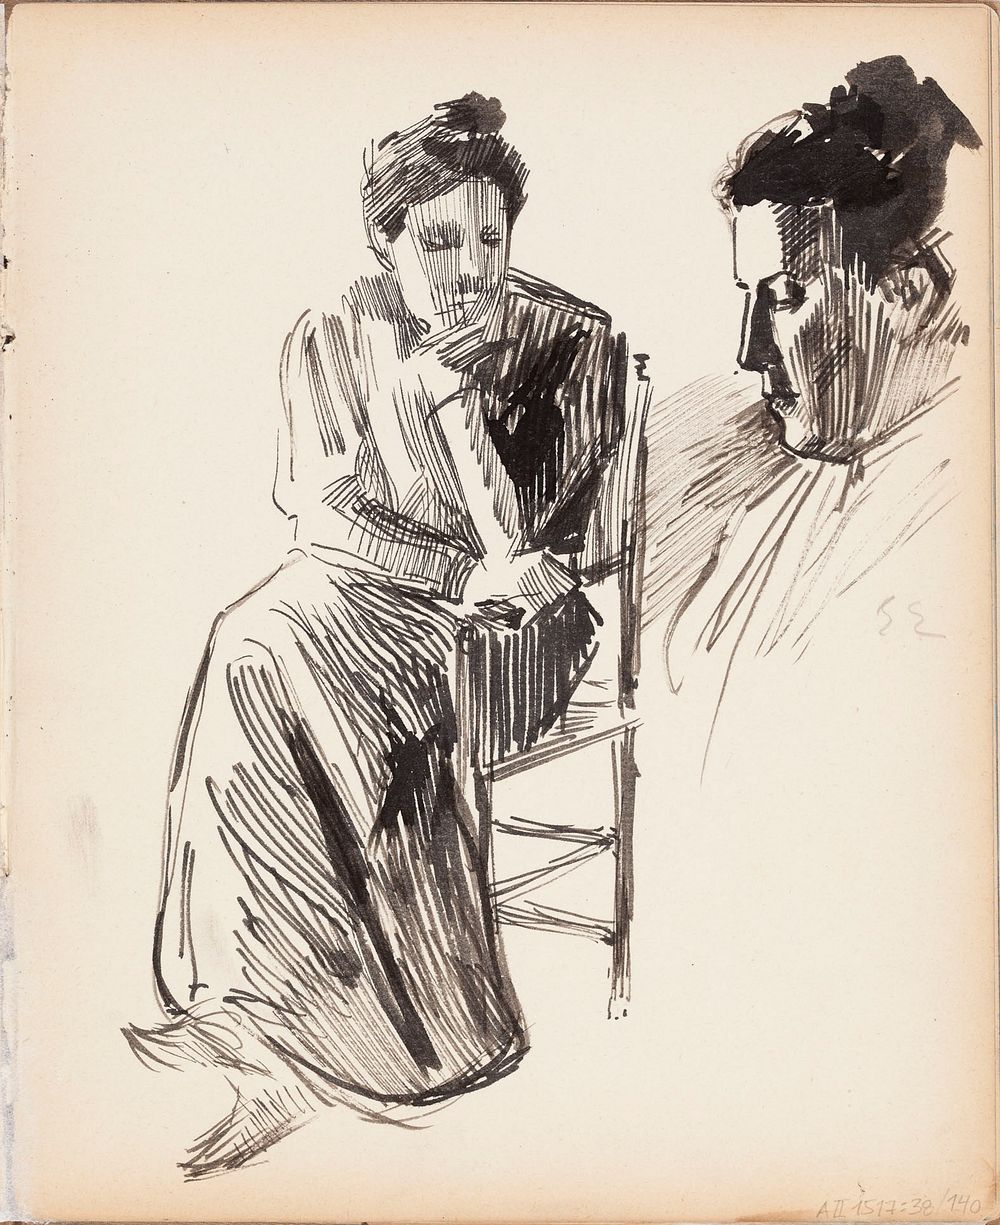 Ellan, taiteilijan vaimo. merk.: e e, 1880 - 1904 part of a sketchbook by Albert Edelfelt